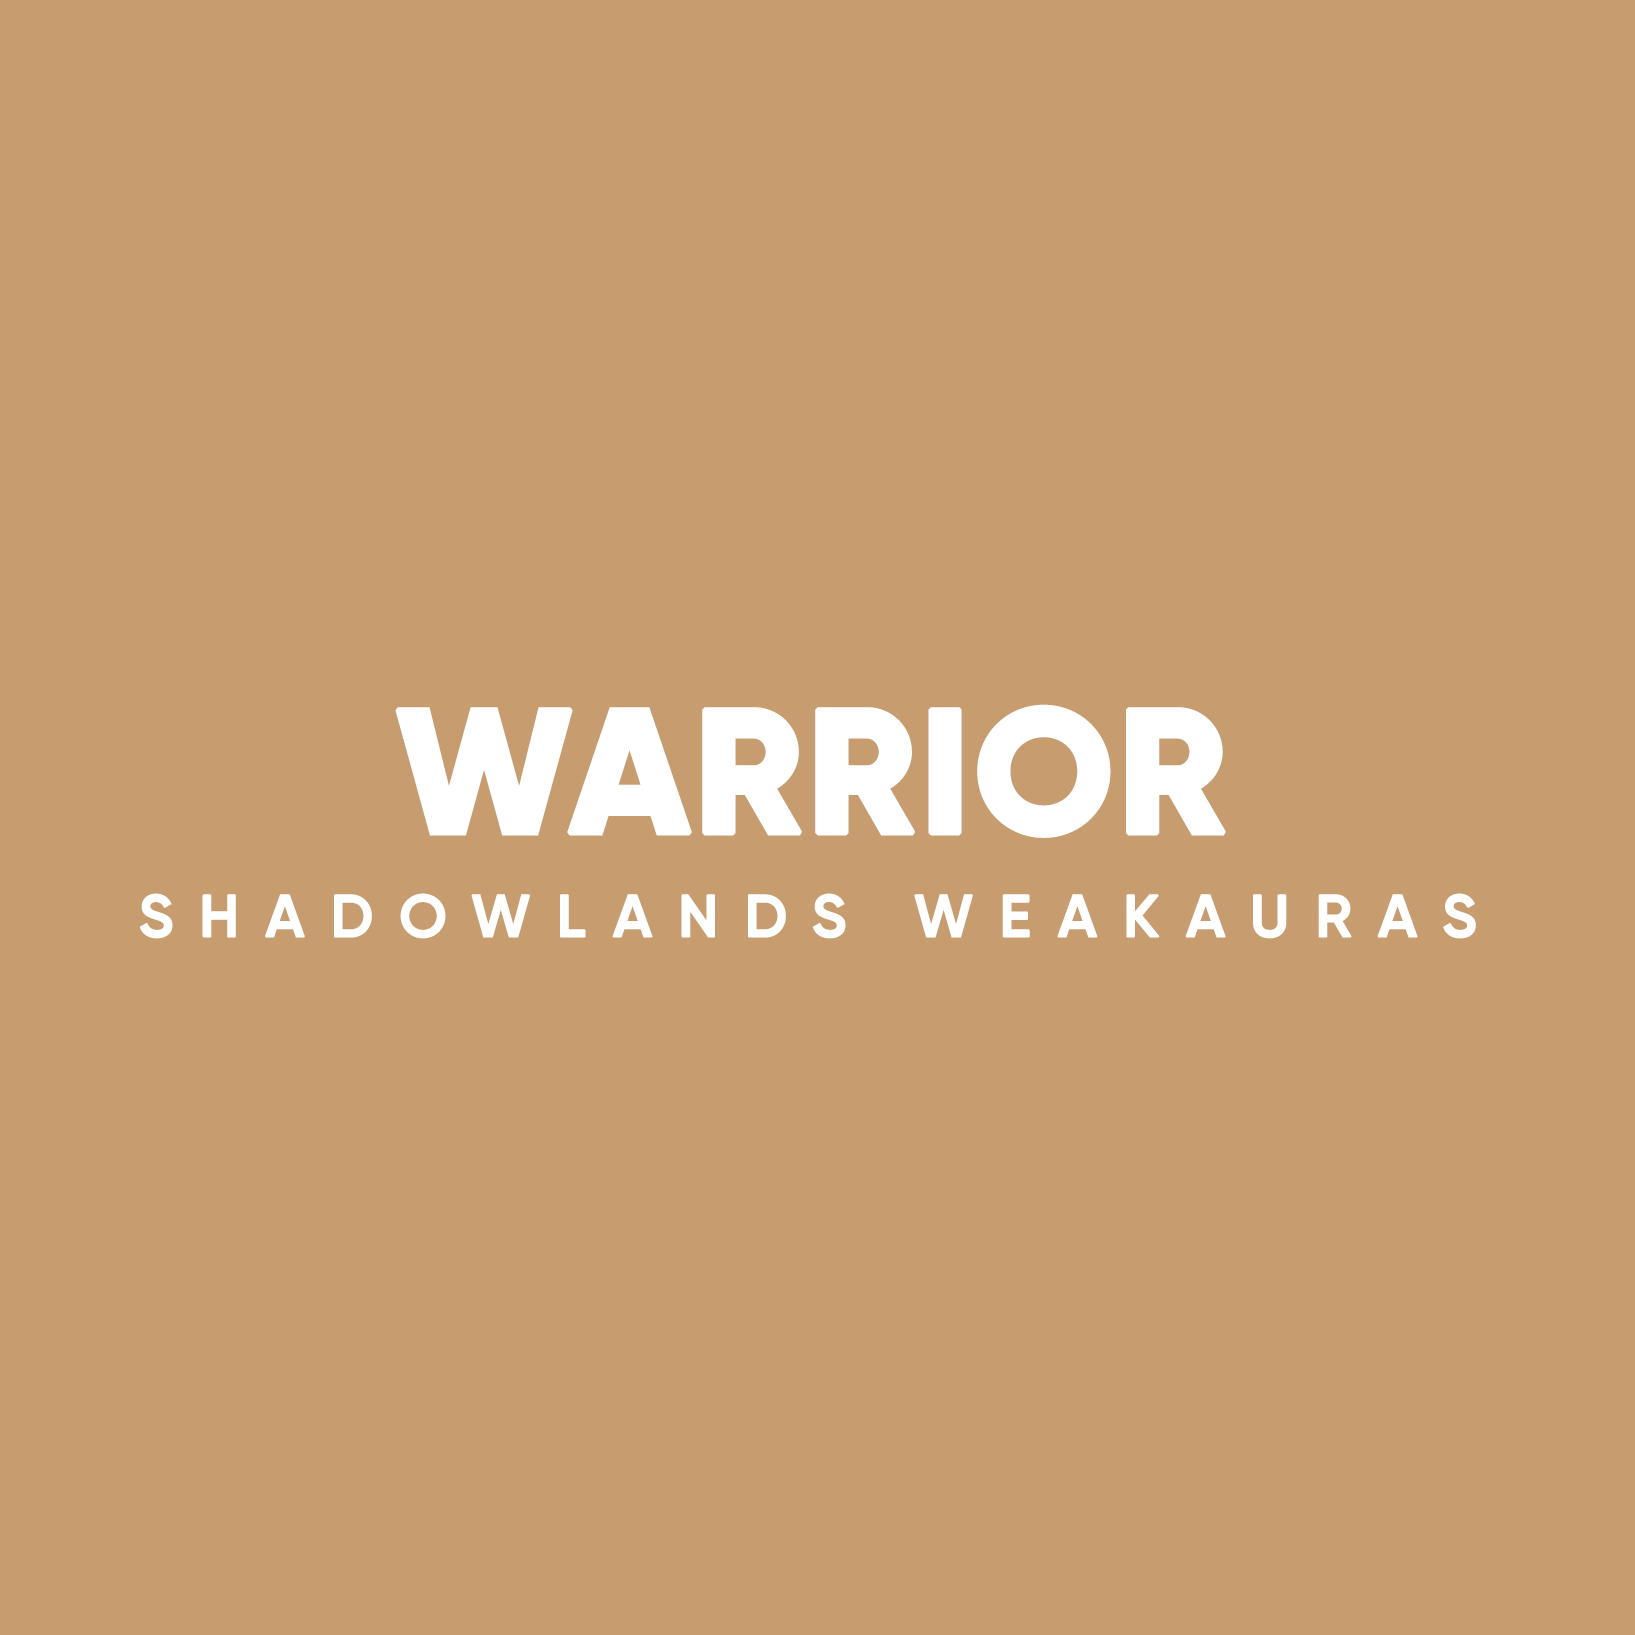 Warrior Weakauras For Shadowlands Luxthos